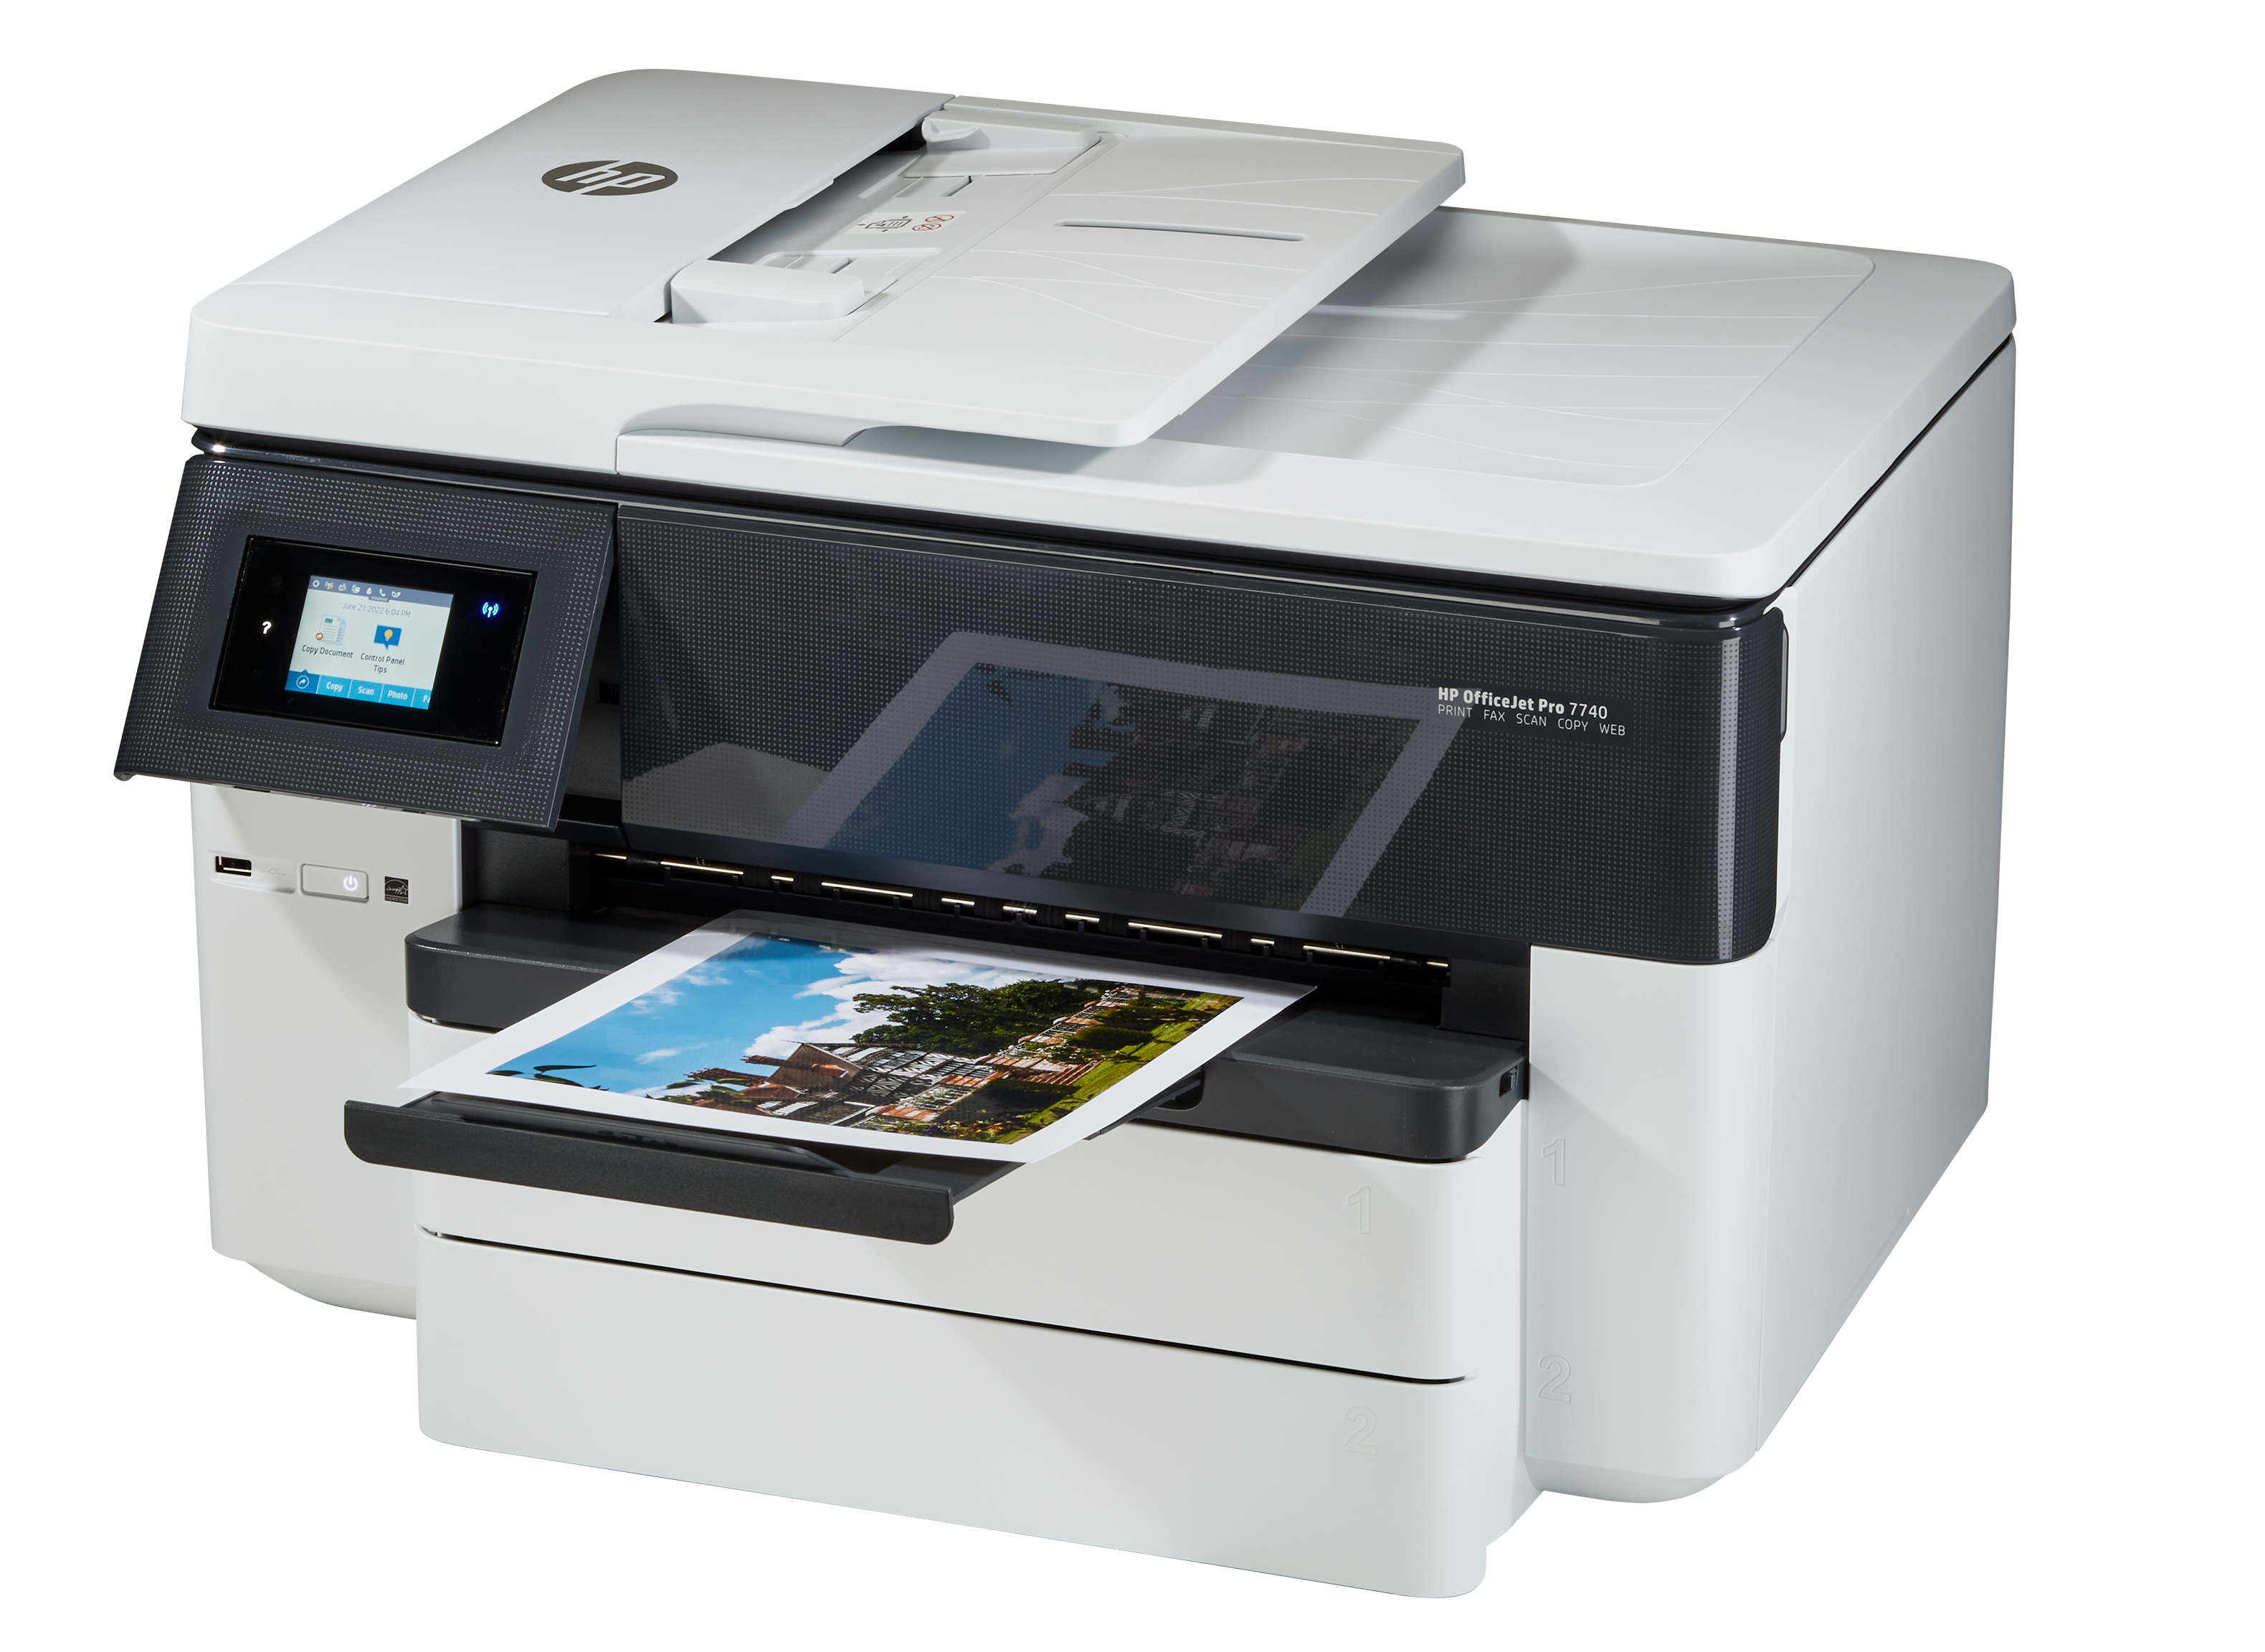 ansvar metallisk Kærlig HP Officejet Pro 7740 Printer Review - Consumer Reports